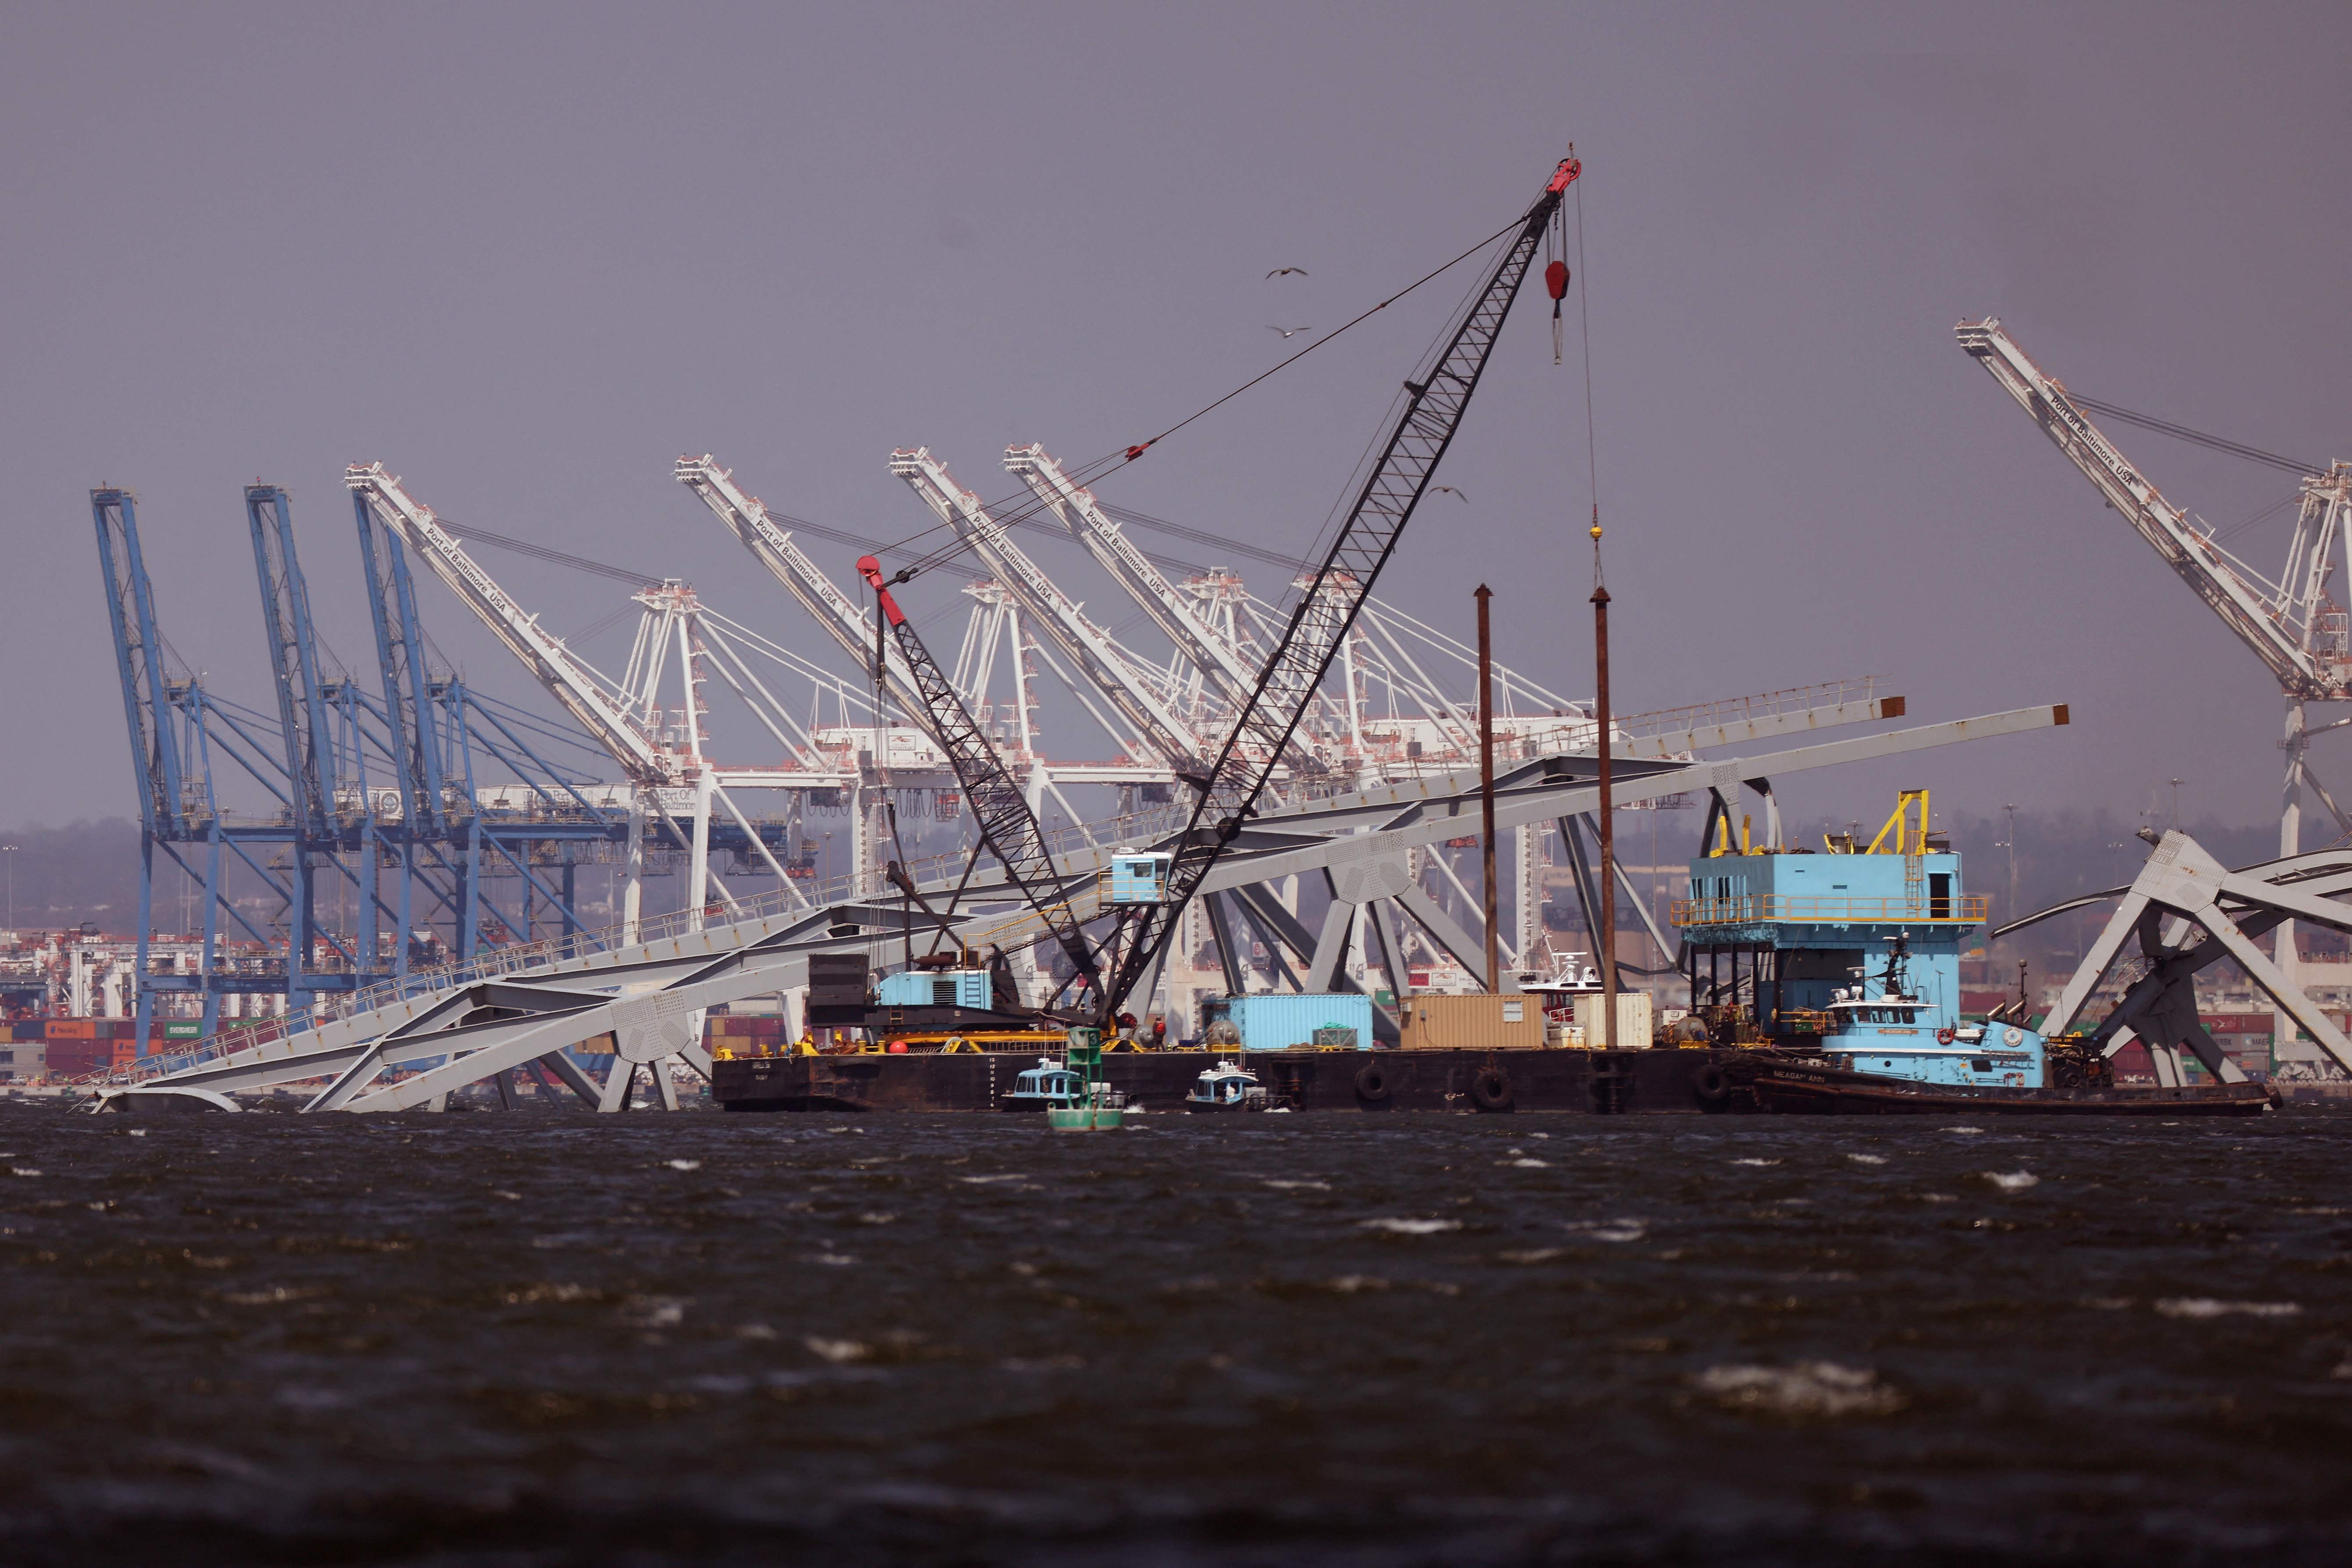 El puerto de Baltimore se ve al fondo mientras las grúas trabajan para limpiar los escombros. (Foto Prensa Libre: AFP)